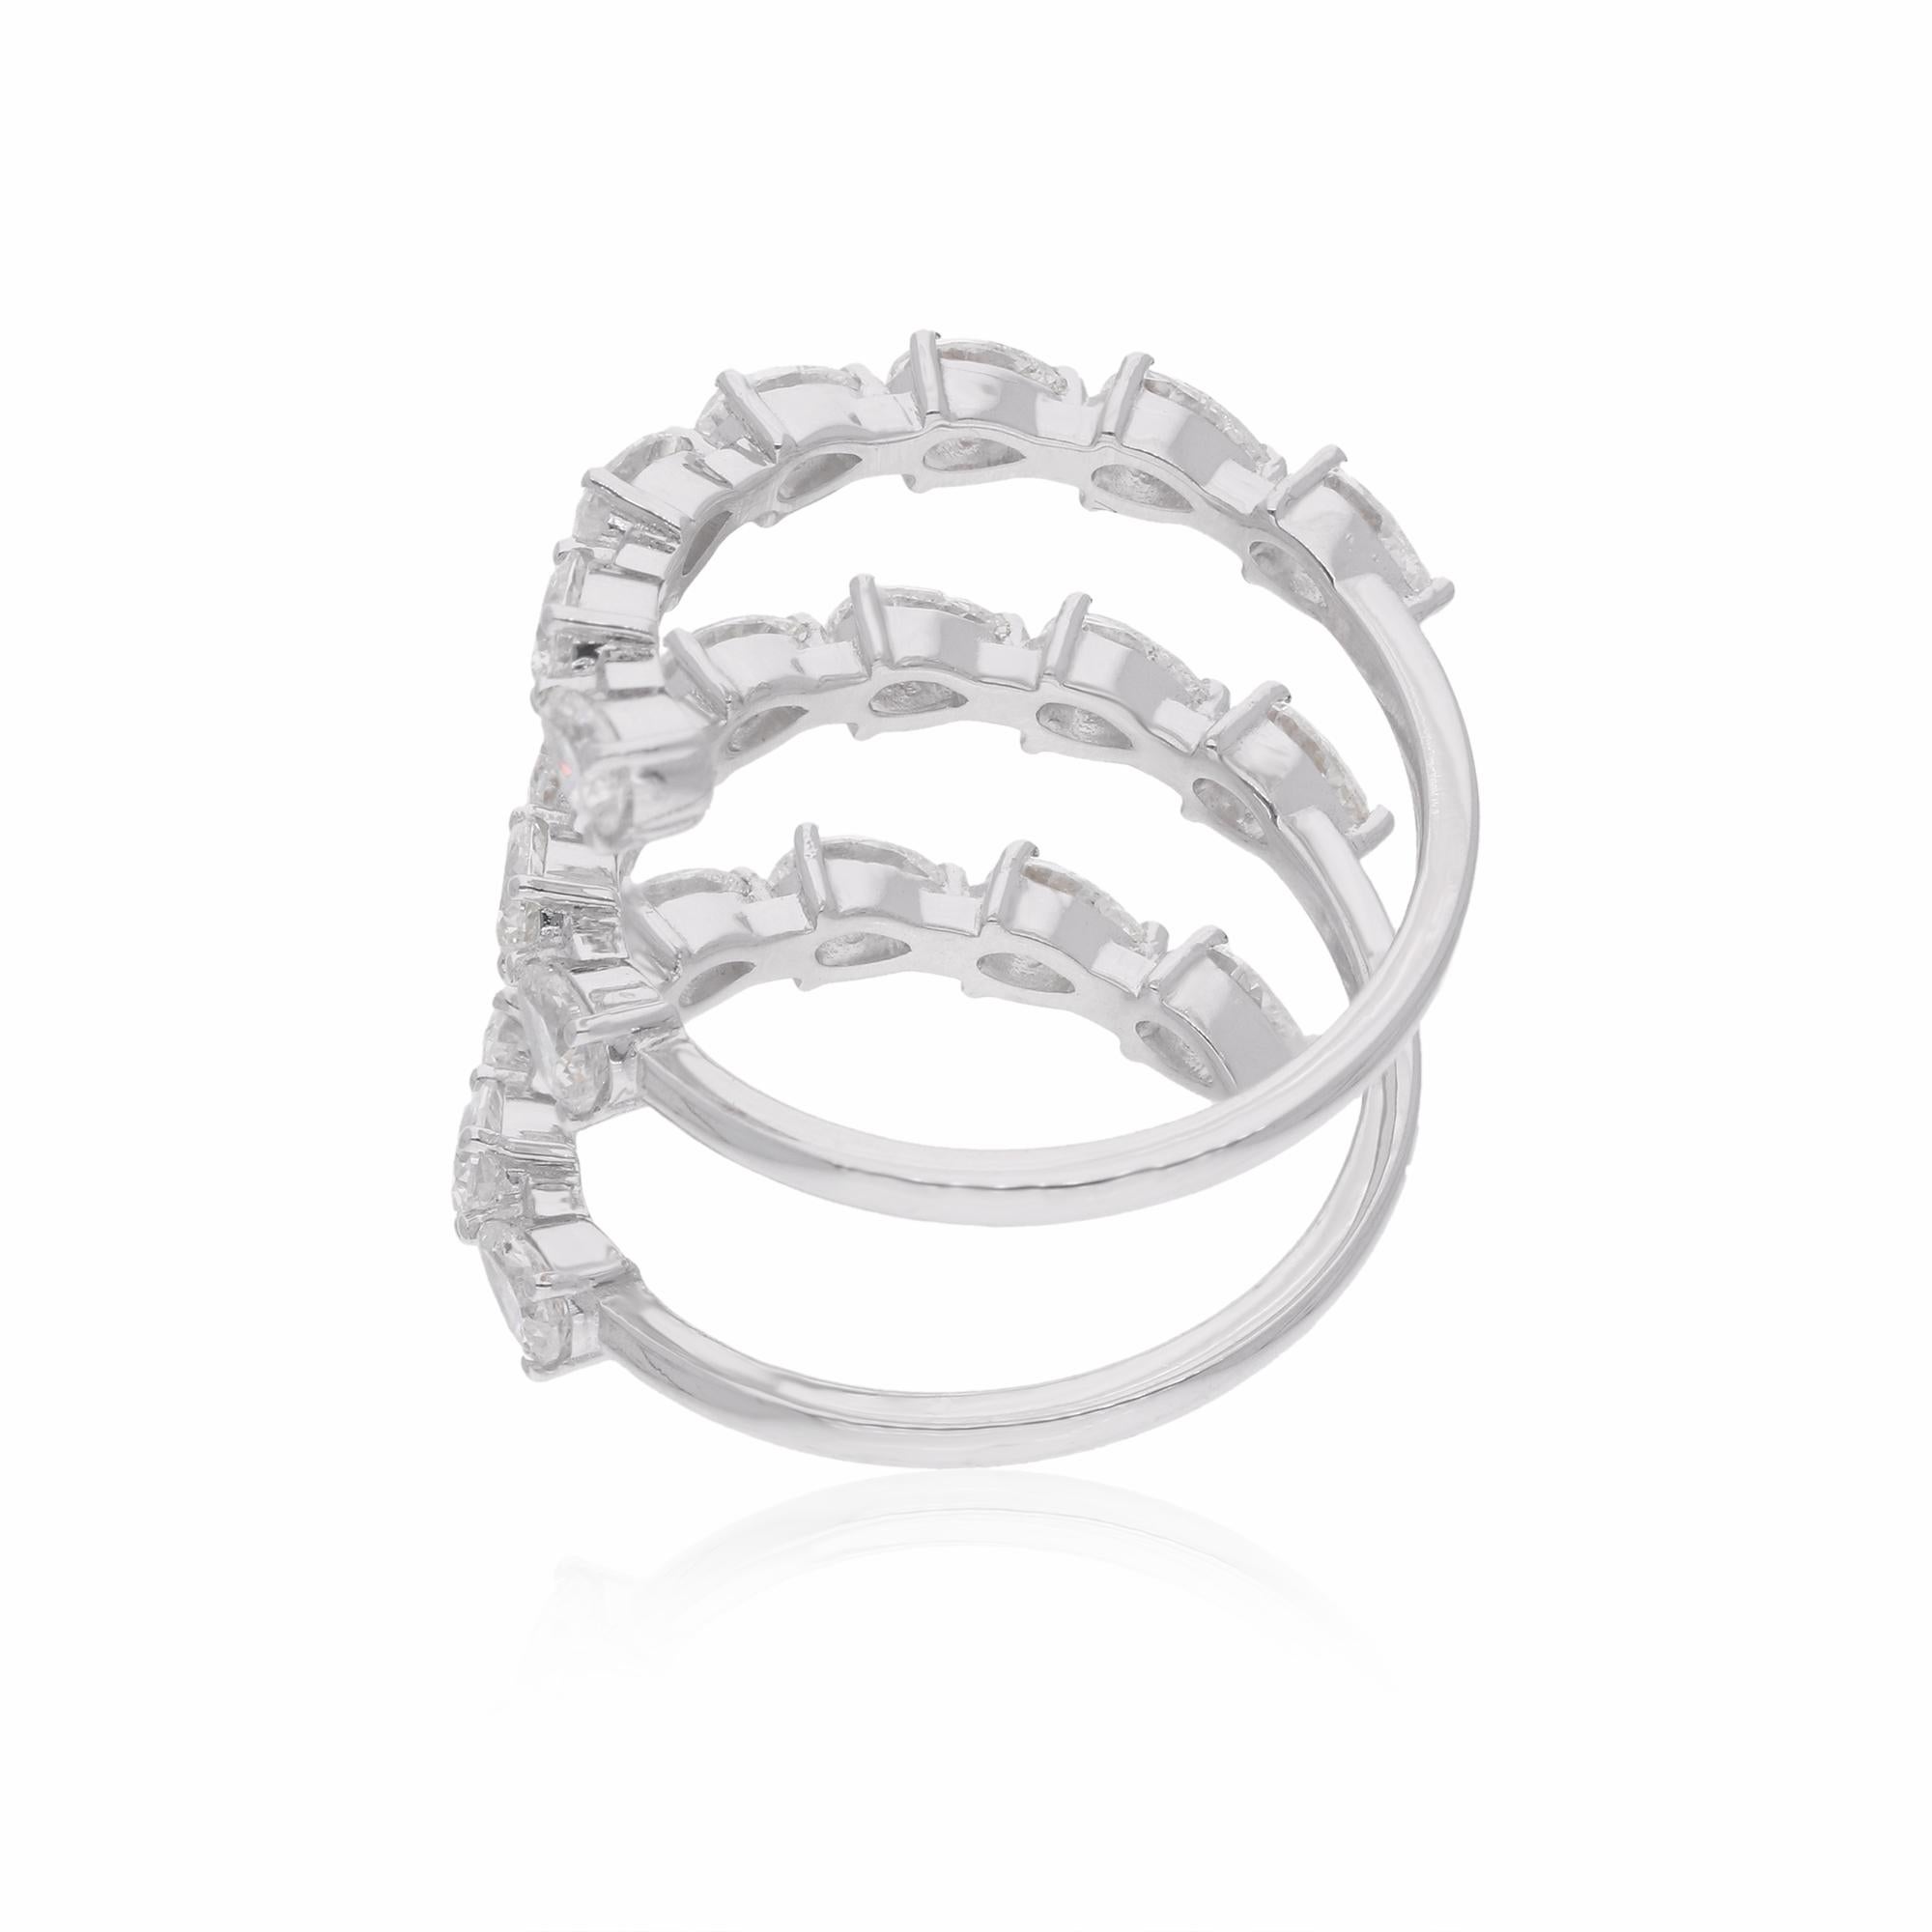 Das Herzstück dieses Rings ist der bezaubernde birnenförmige Diamant, der für seine anmutige Silhouette und sein brillantes Funkeln bekannt ist. Mit seiner einzigartigen Form bietet der Diamant im Birnenschliff eine Mischung aus der klassischen